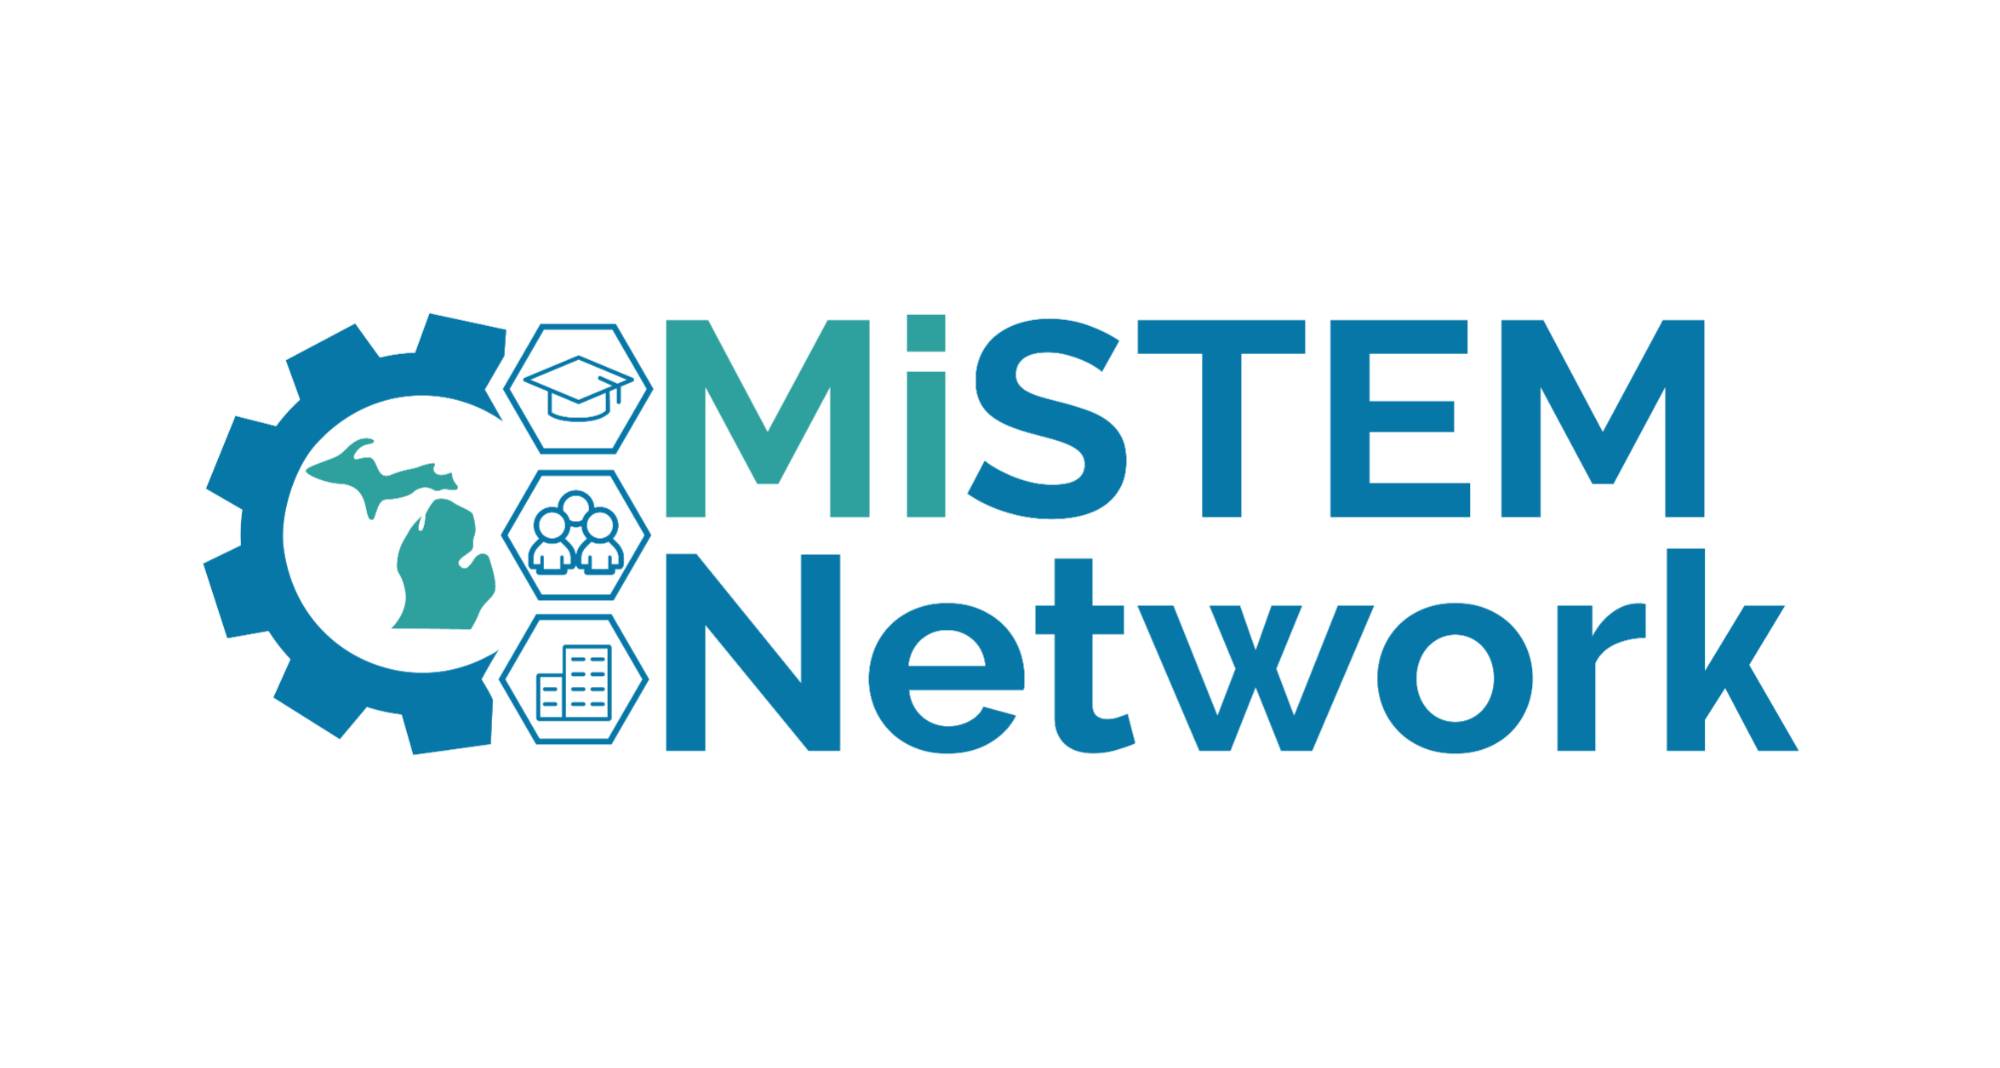 MiSTEM Network logo